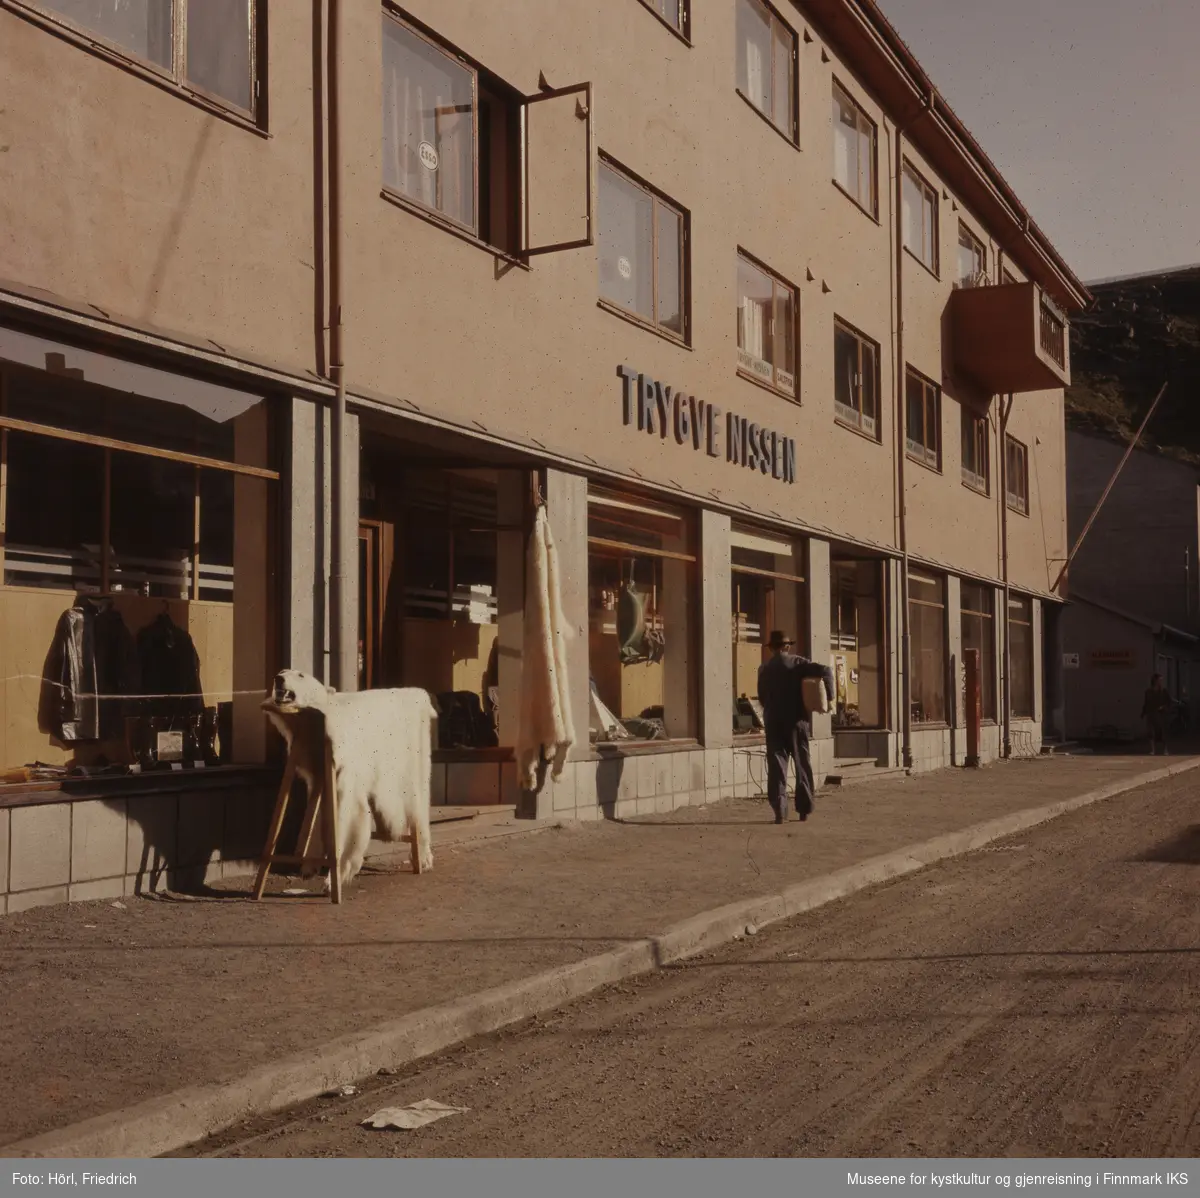 Butikken "Trygve Nissen" i Sjøgata i Hammerfest. I første etasjen er et vindu åpent. En Mann går i gata og bærer en pakke under armen. Foran butikken presenteres det en isbjørnskinn med hode.